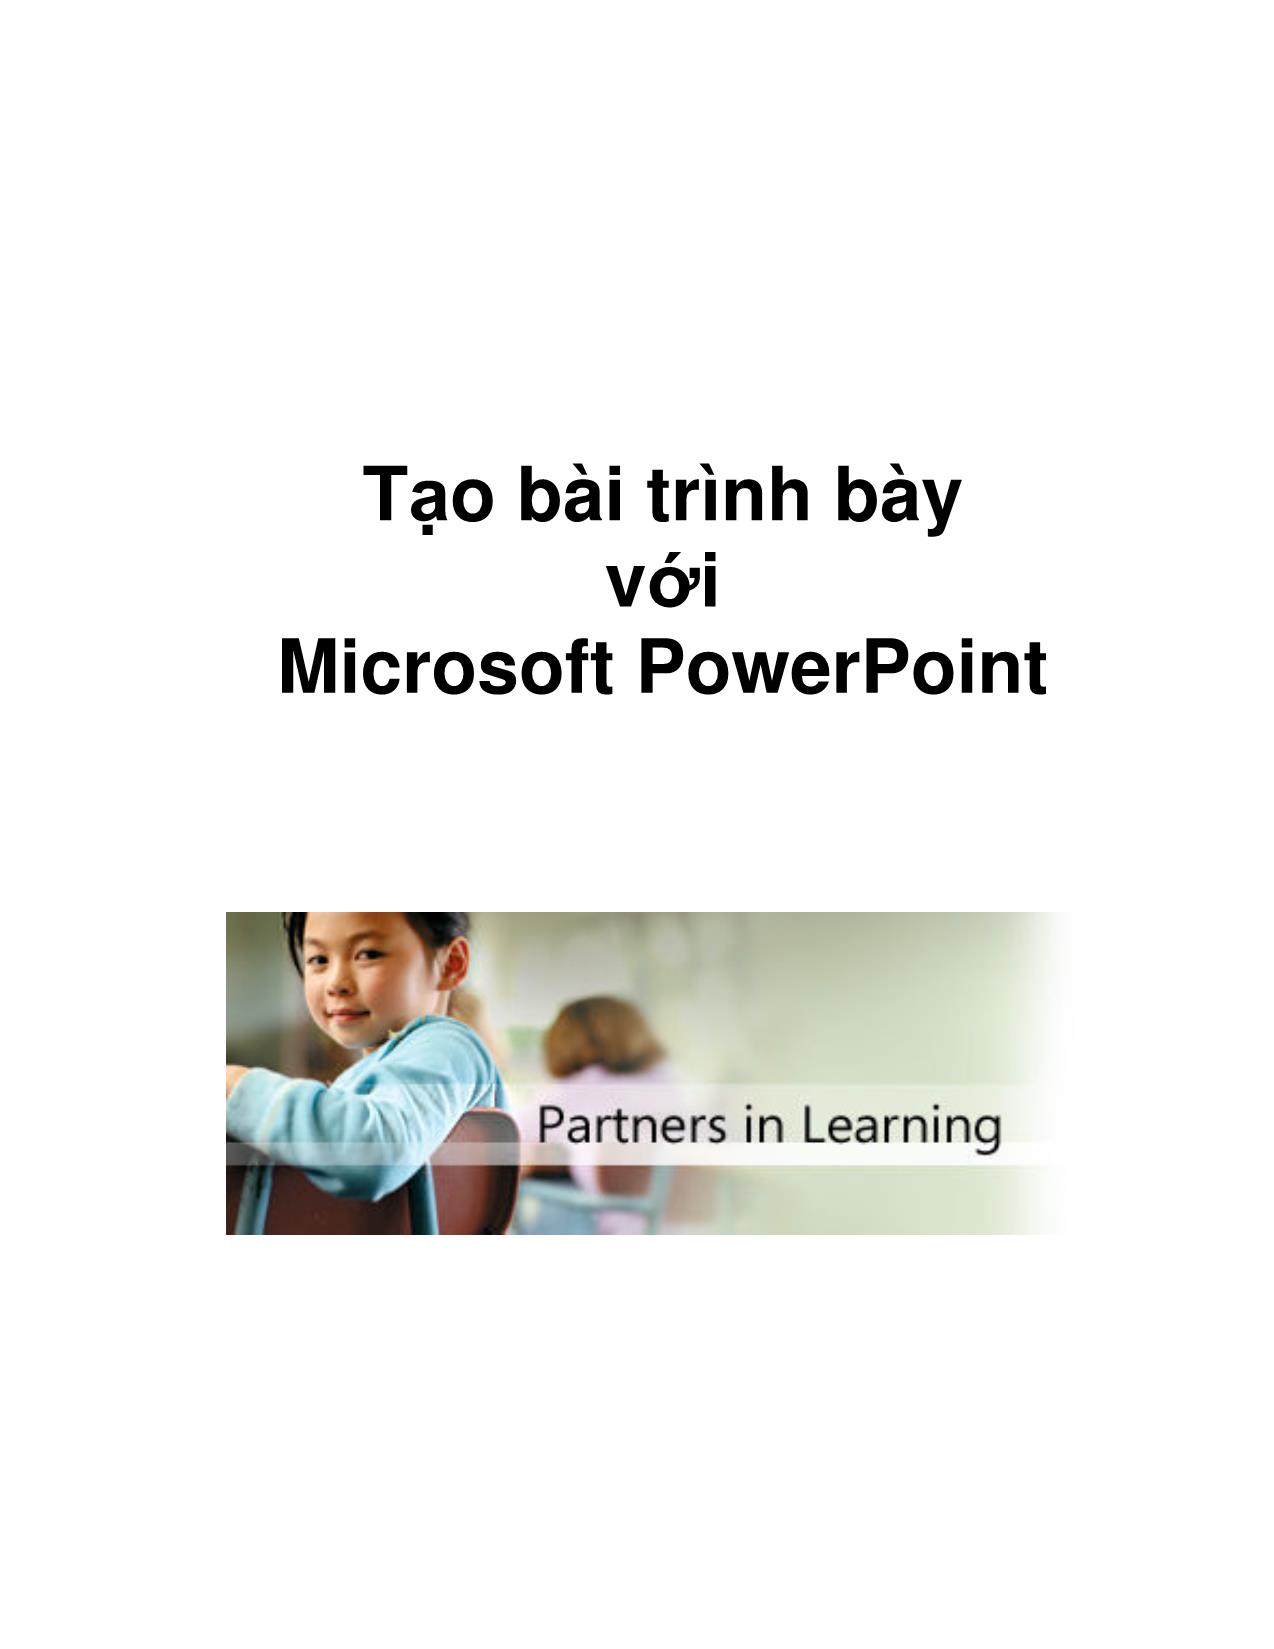 Tạo bài trình bày với Microsoft PowerPoint trang 1